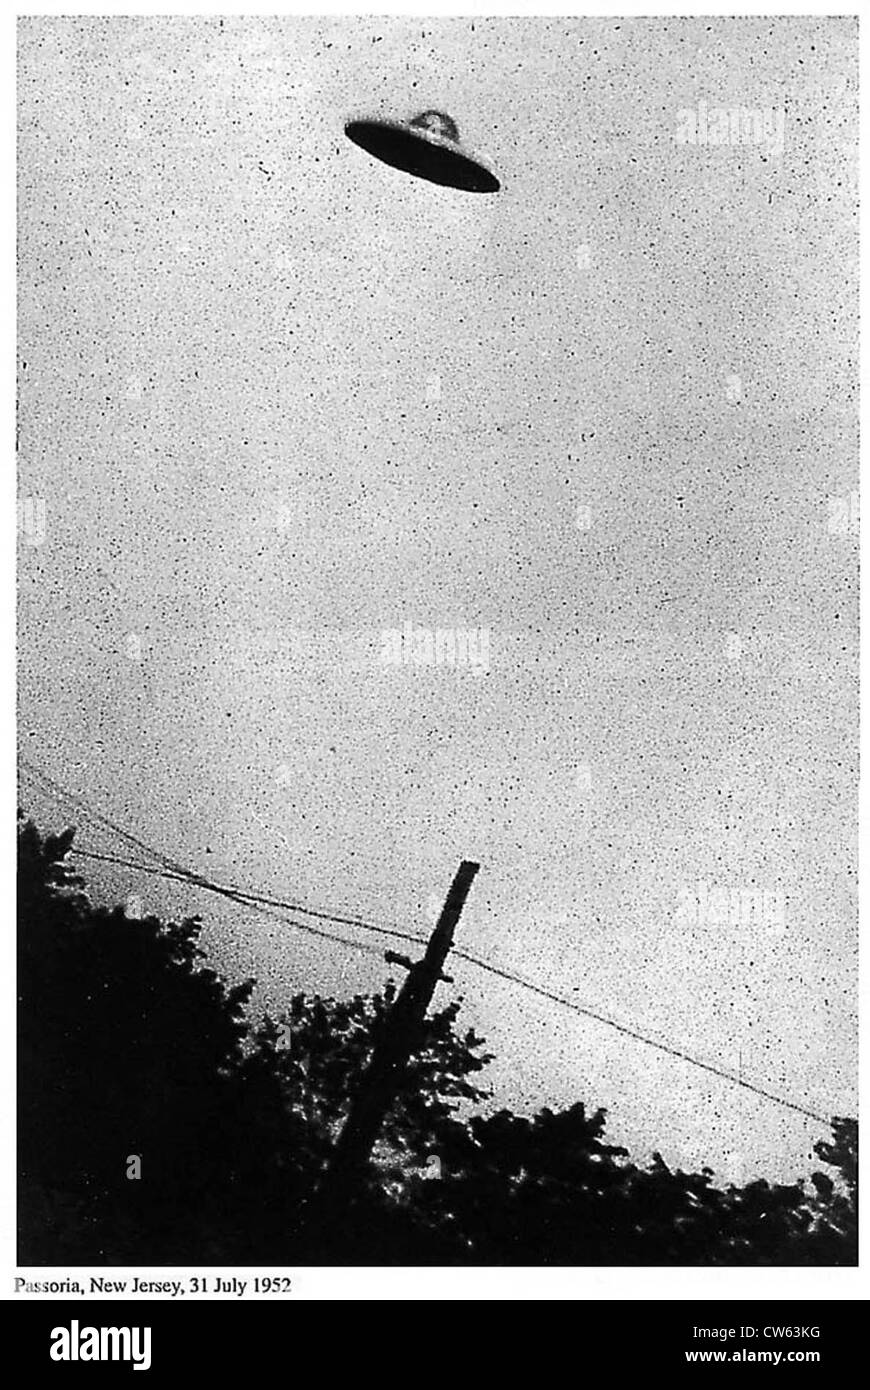 Image de soi-disant OVNI, Passoria, New Jersey, USA, 31 juillet 1952 Banque D'Images